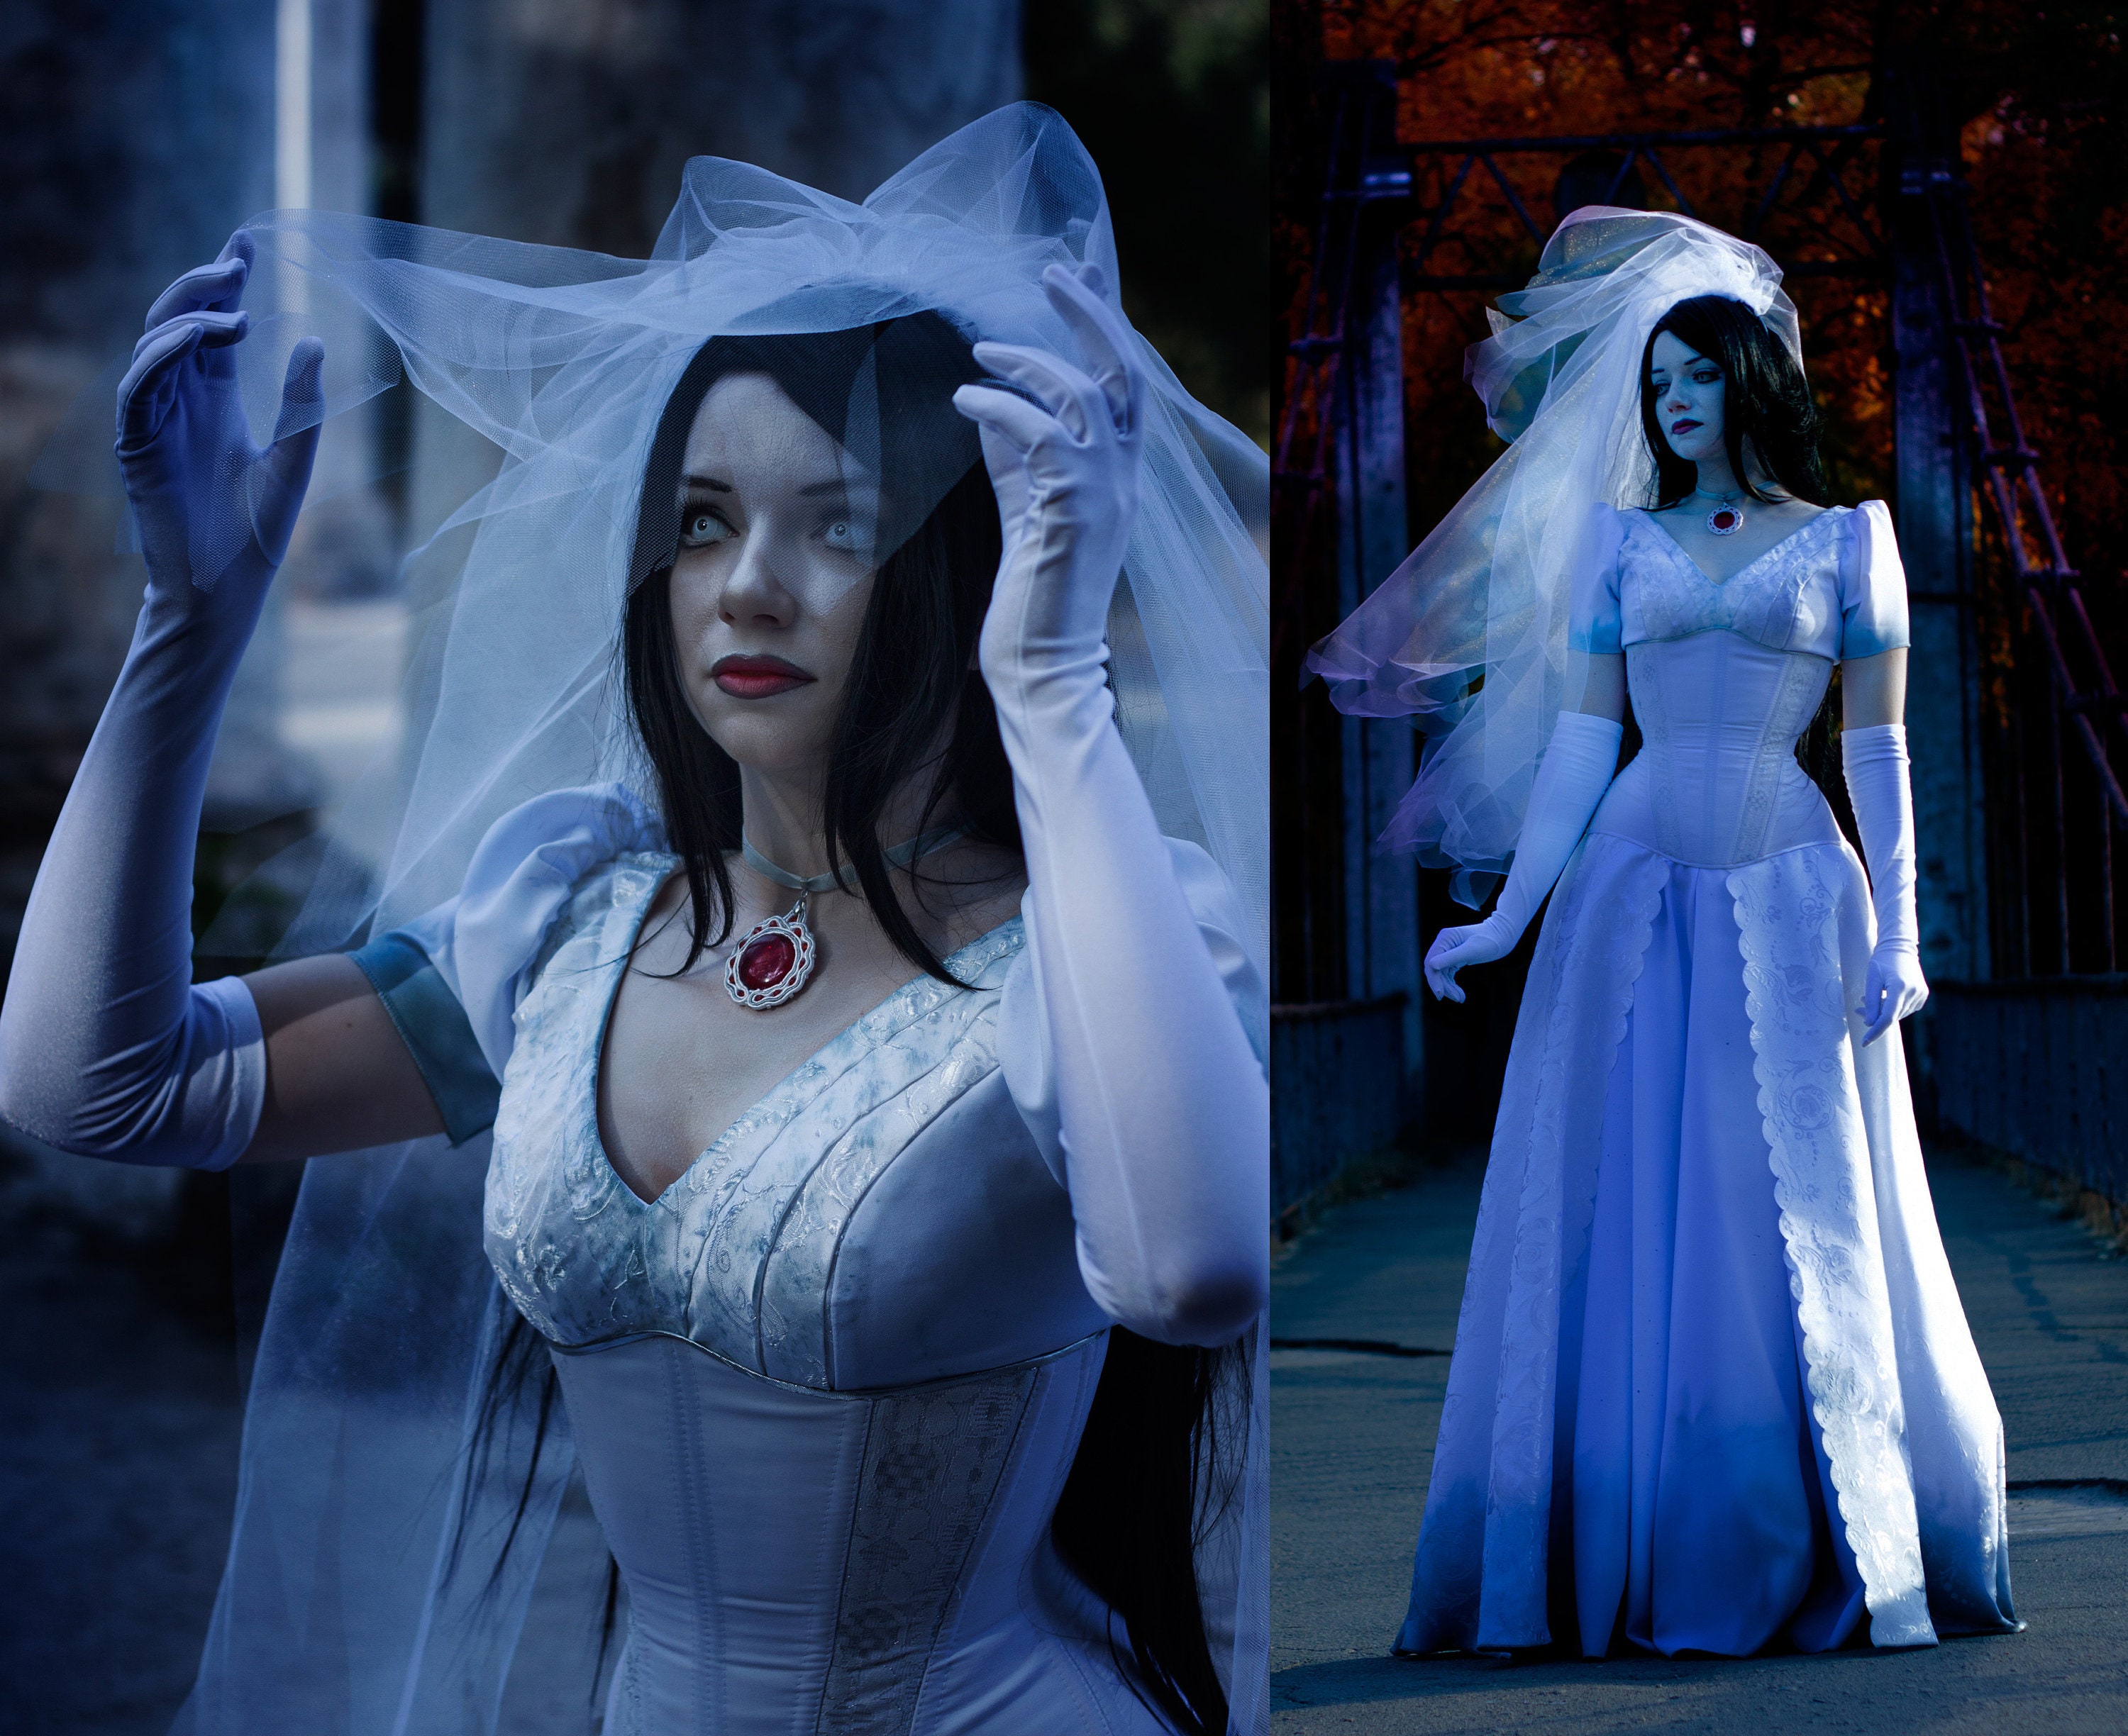 Corpse Bride by *Malro-Doll  Corpse bride costume, Bride costume